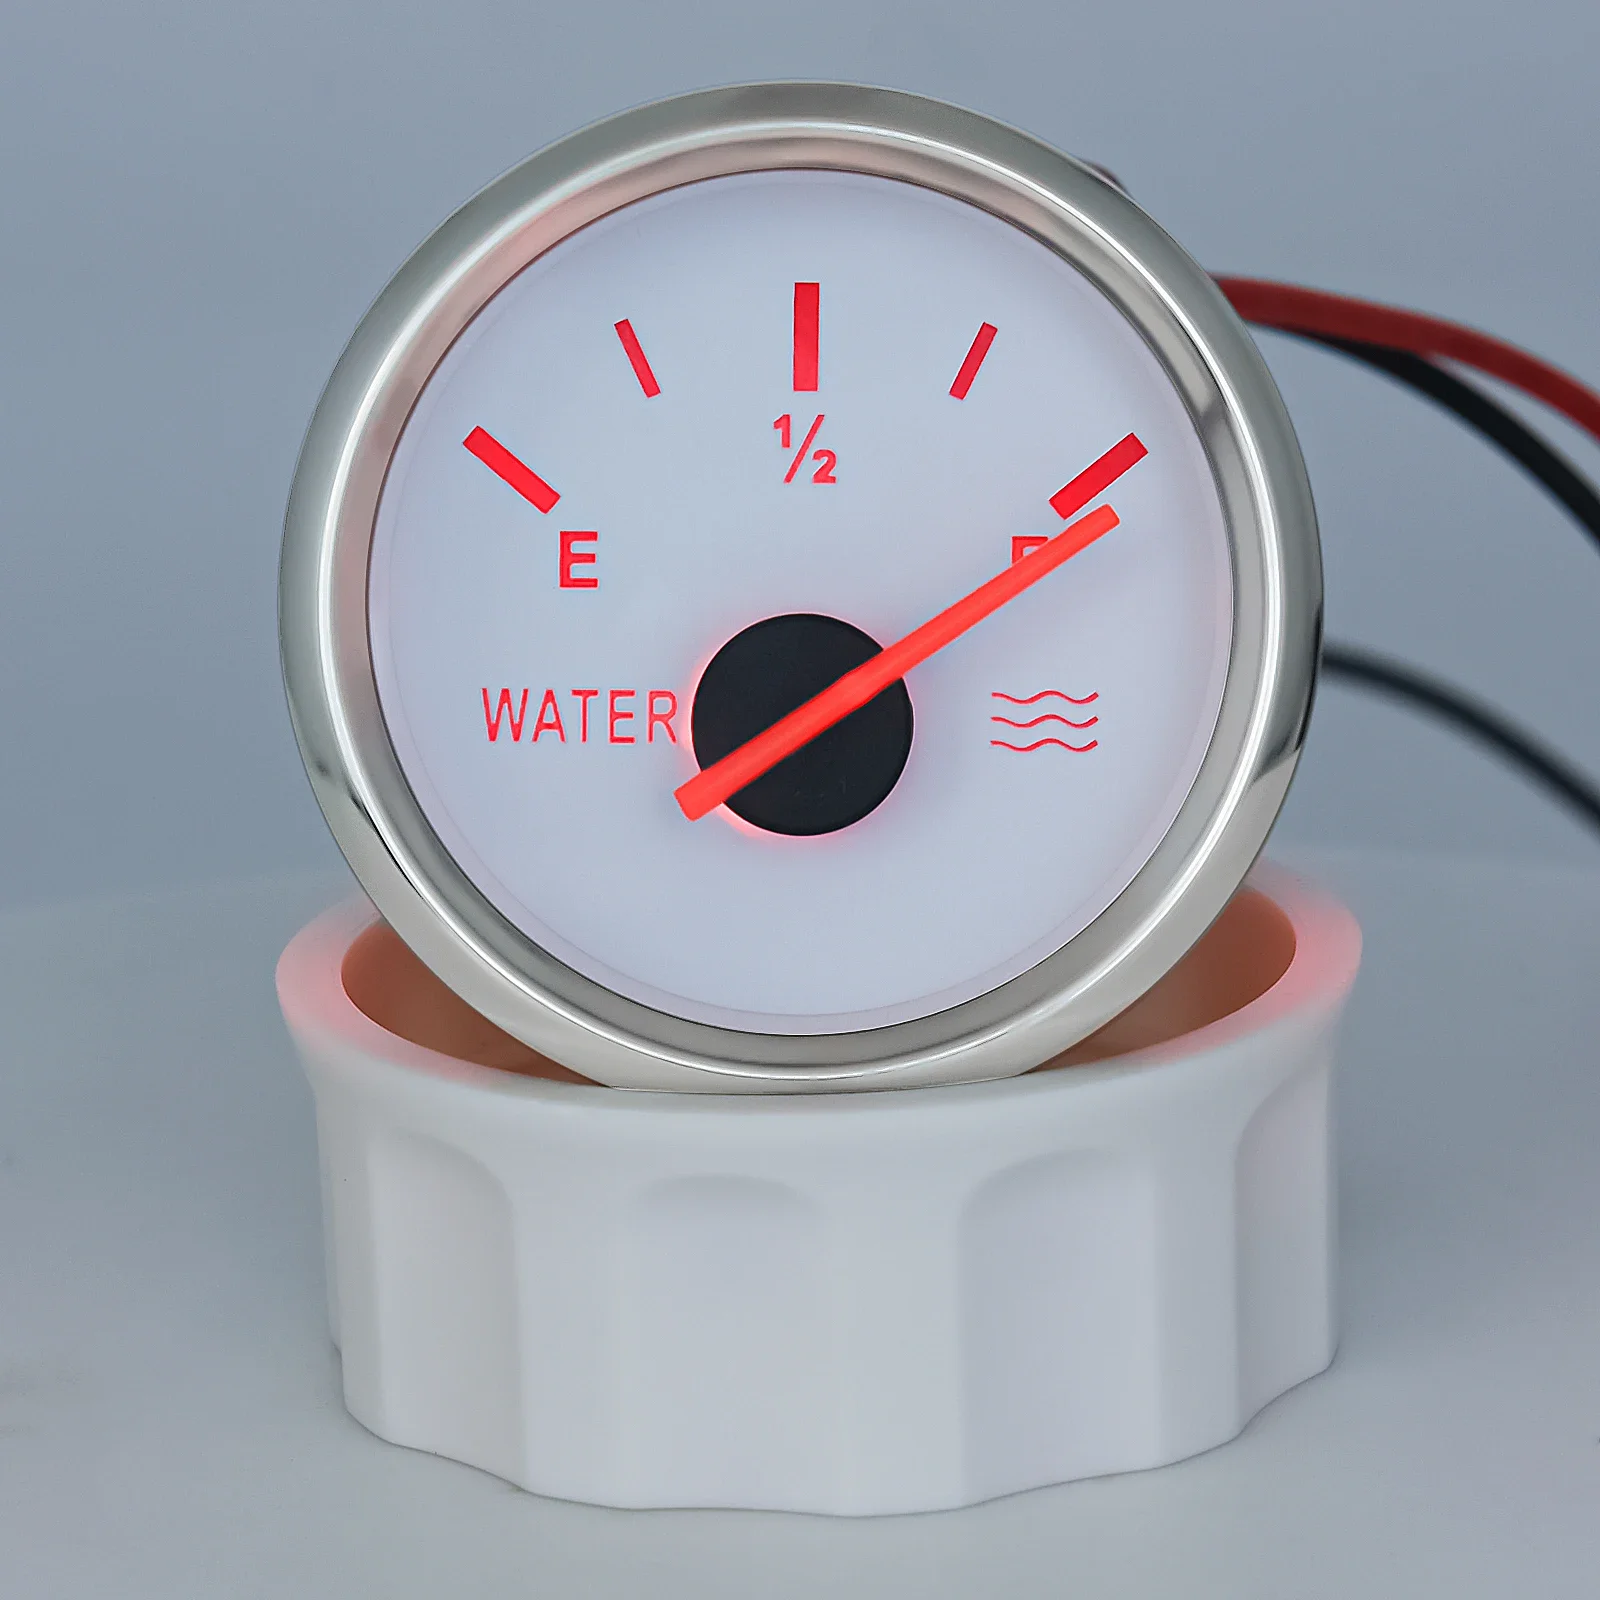 Water Level Gauge Water Level Sensor 52mm Water Level Meter Tank Indicator With Red Backlight 100-500mm 0-190 Ohm Sensor 12V24V